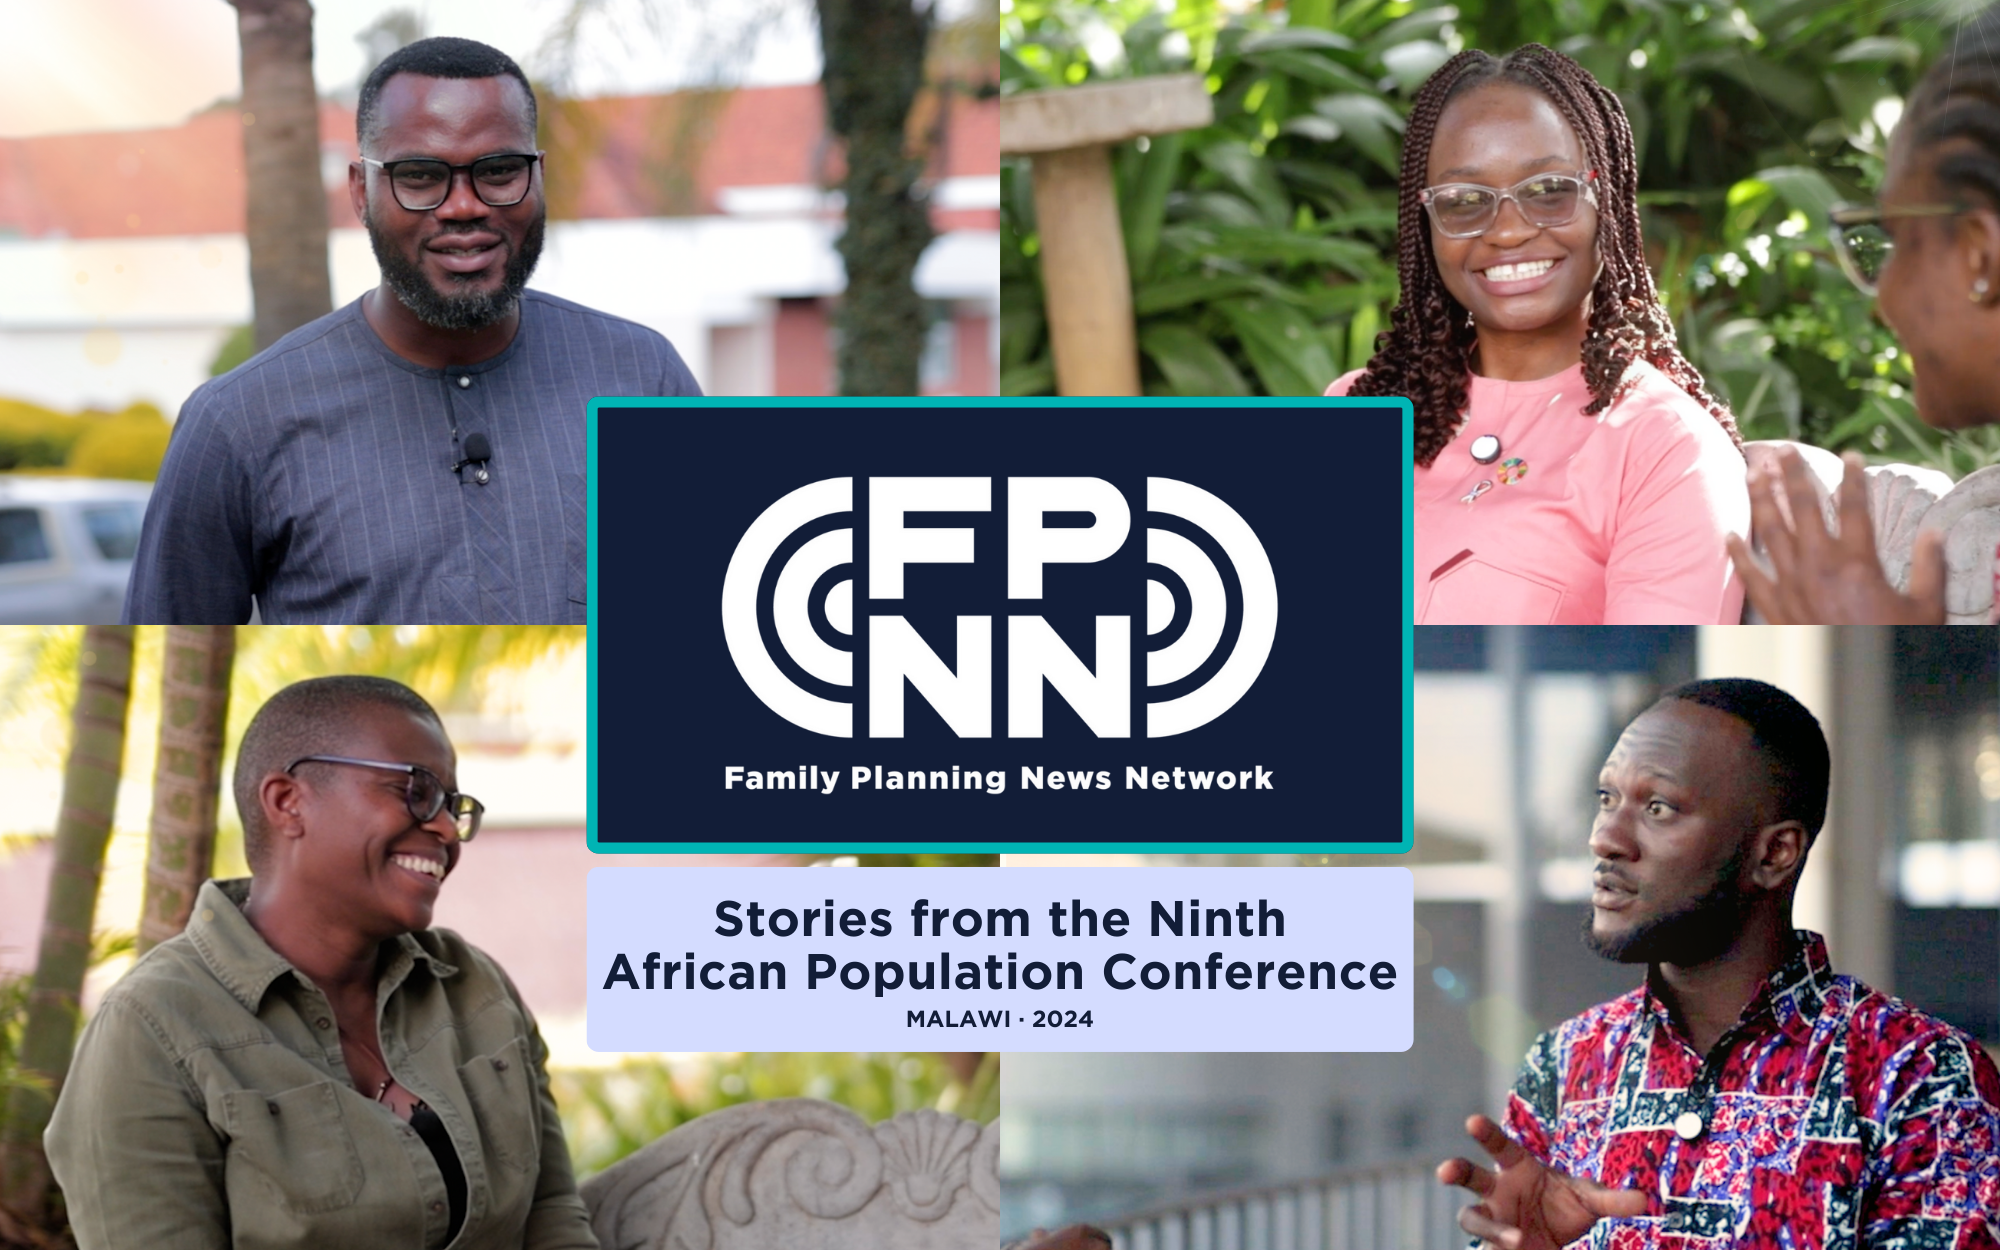 FPNN découvre des histoires à APC et au-delà : Discussions transformatrices sur l'avenir de la planification familiale